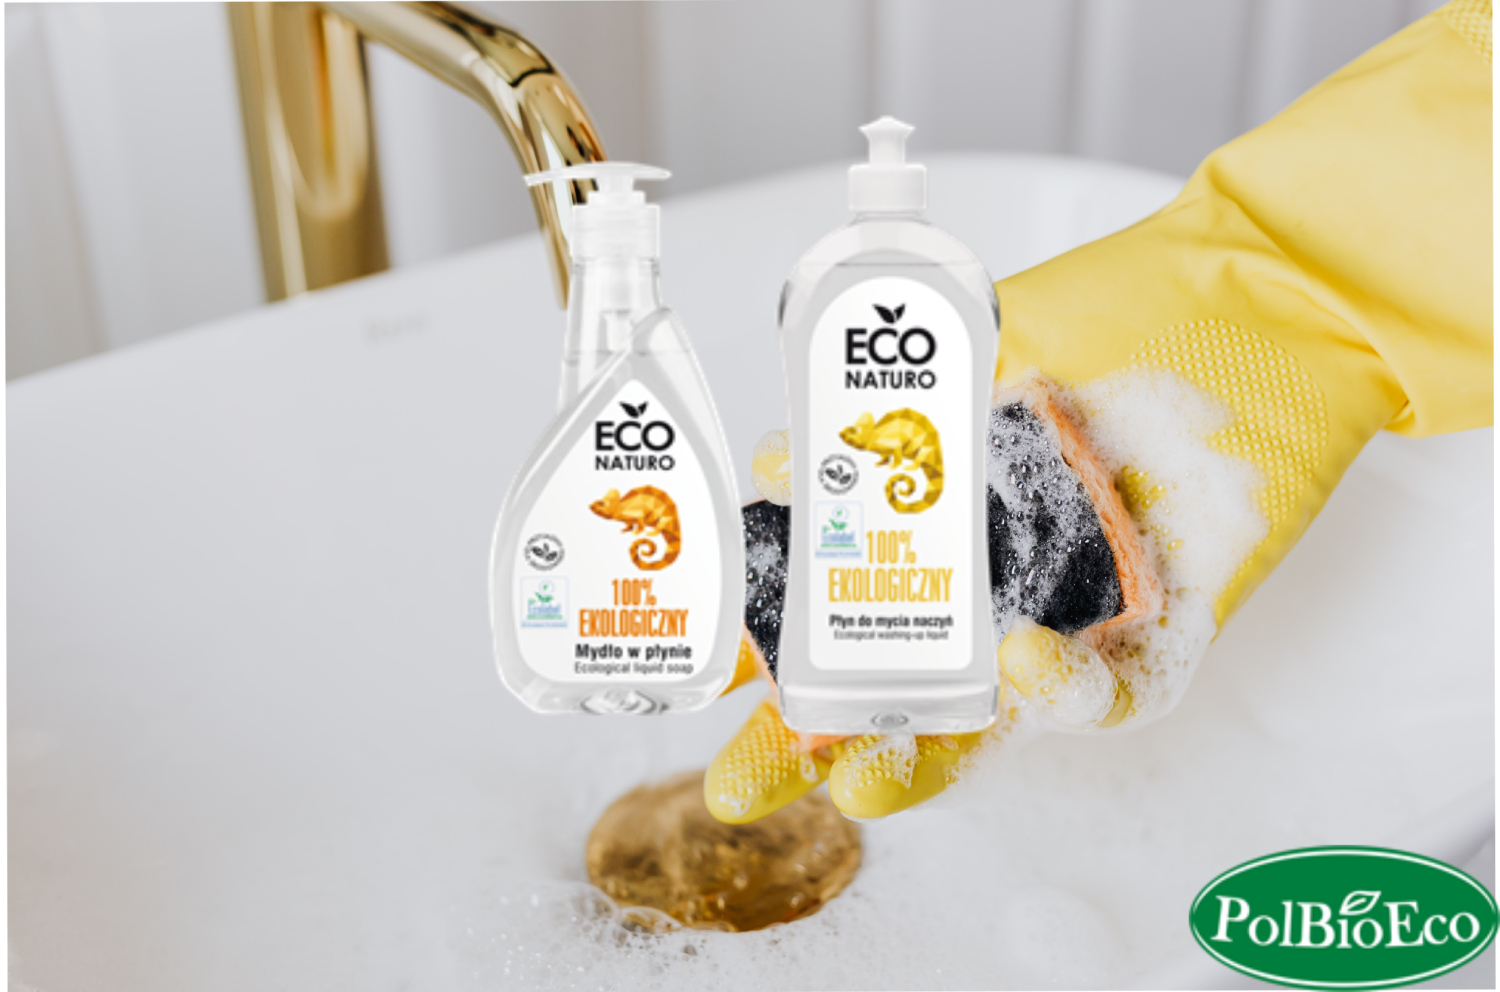 Mydło w płynie i płyn do mycia naczyń Eco Naturo PolBioEco